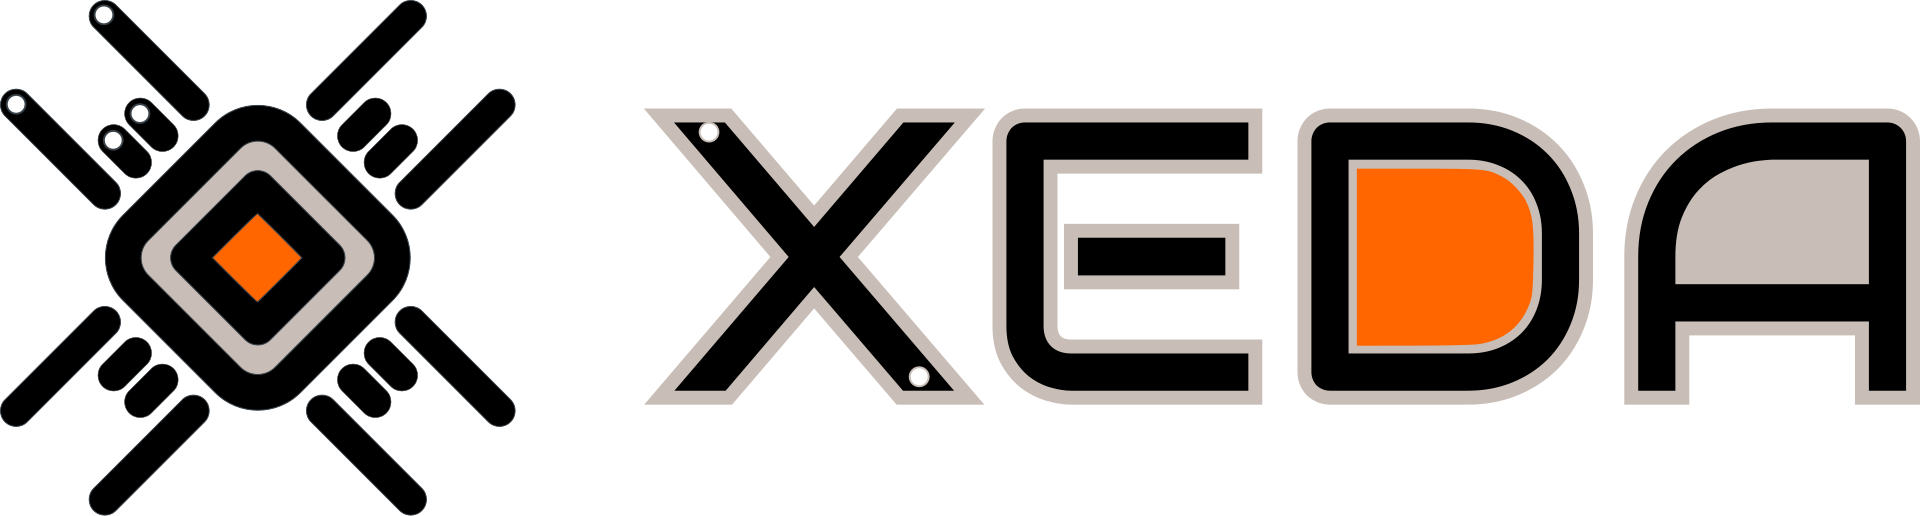 Xeda Logo